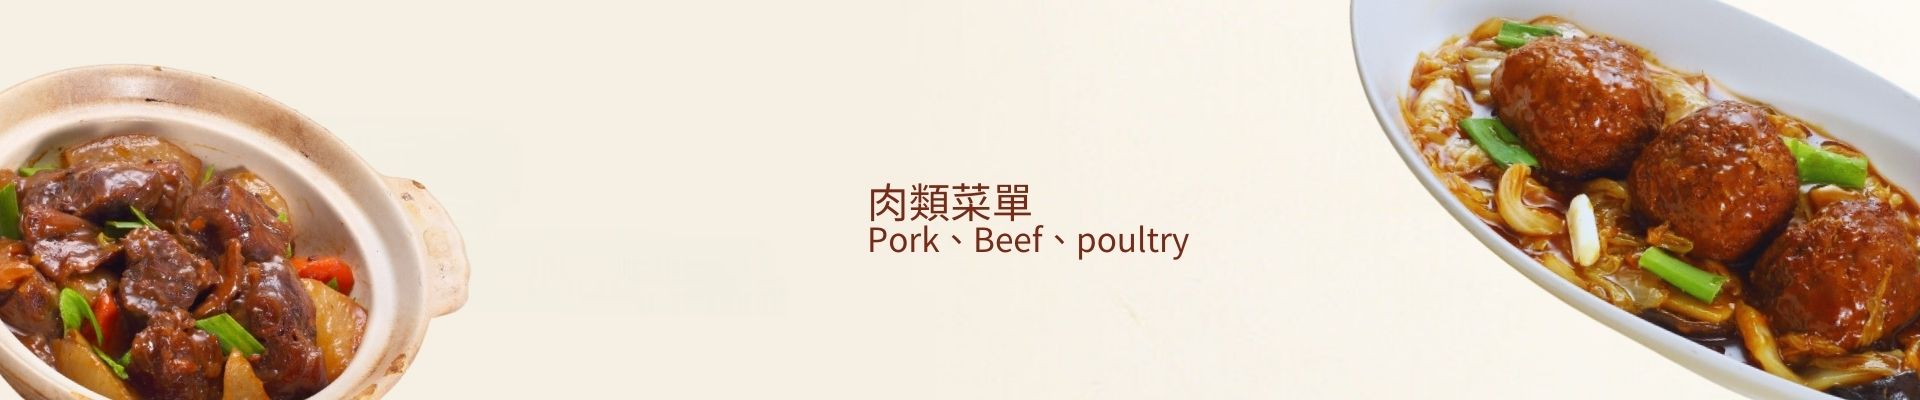 肉類菜單